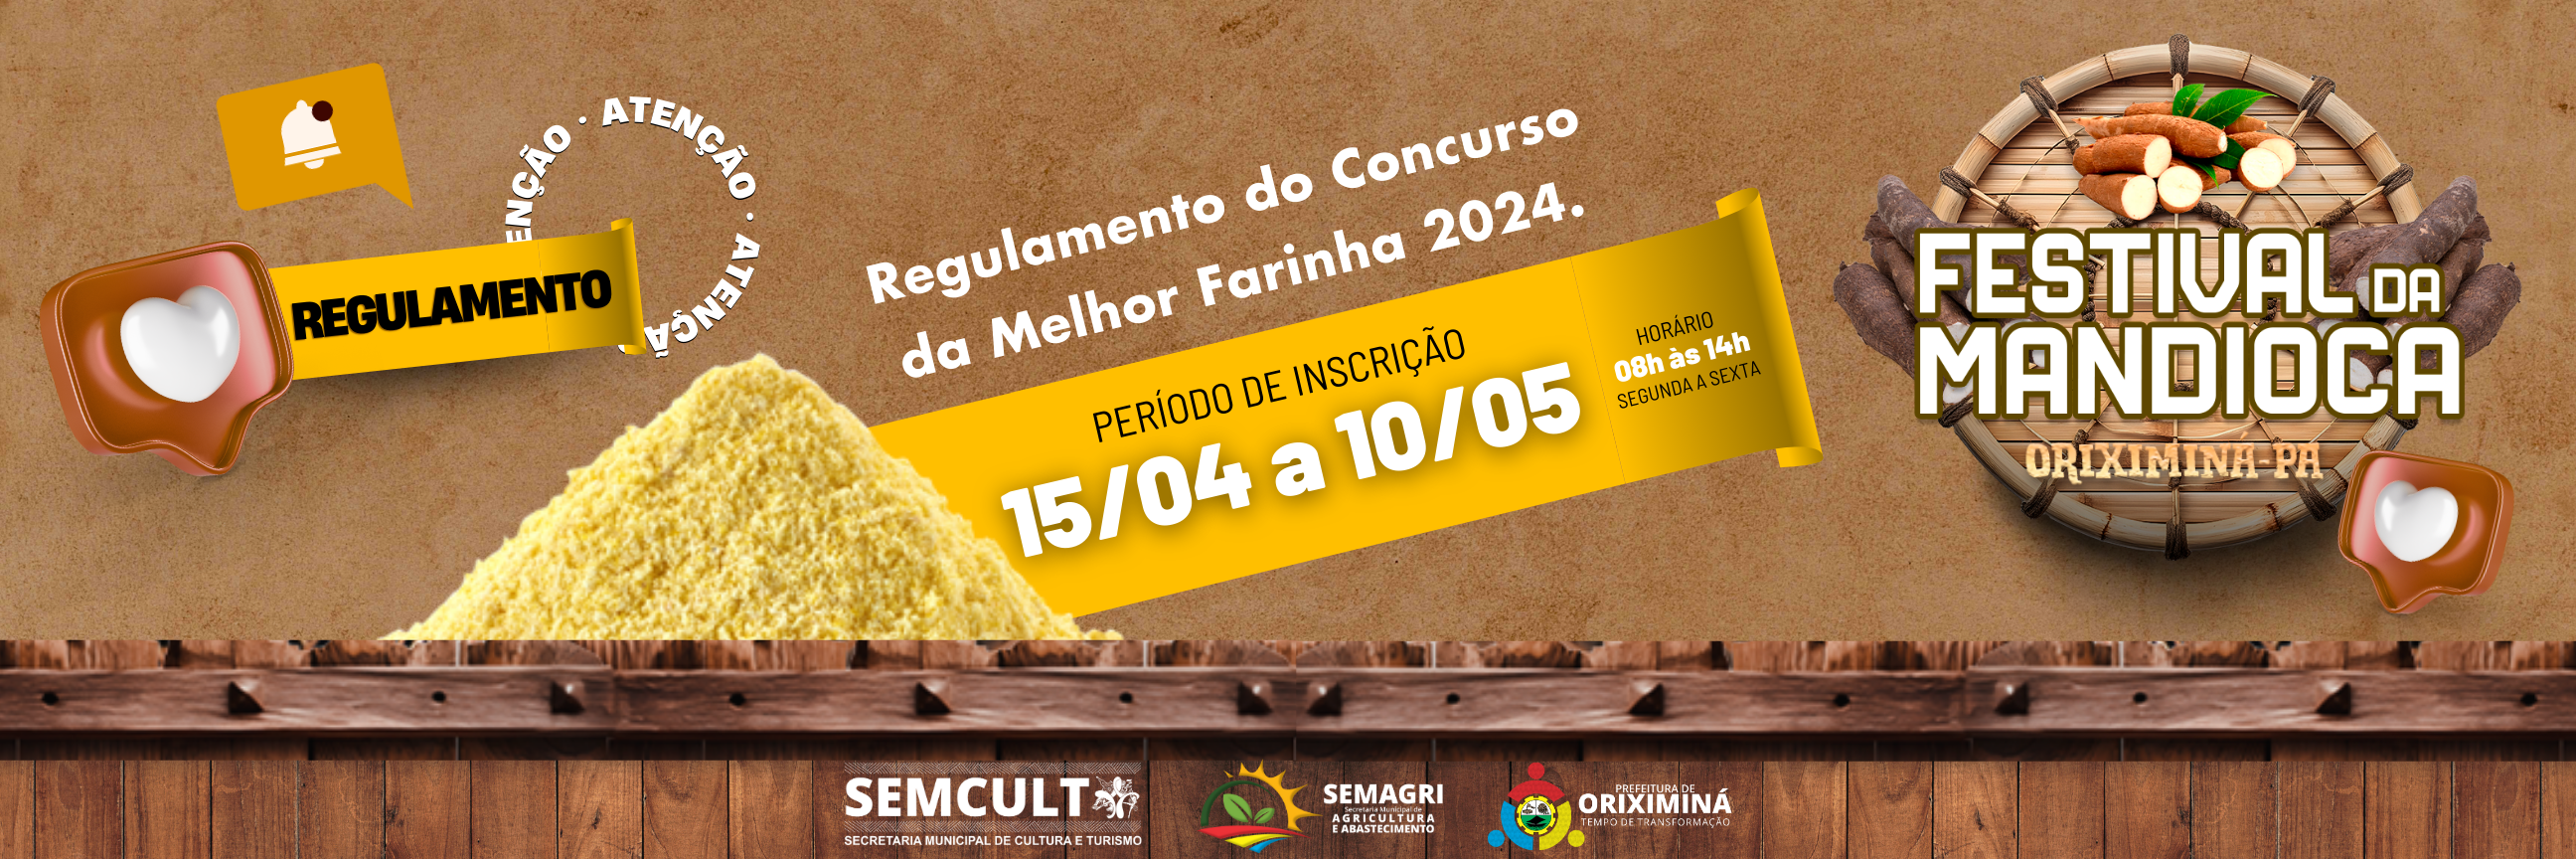 SEMCULT lança regulamento do Concurso da Melhor Farinha do Festival da Mandioca 2024